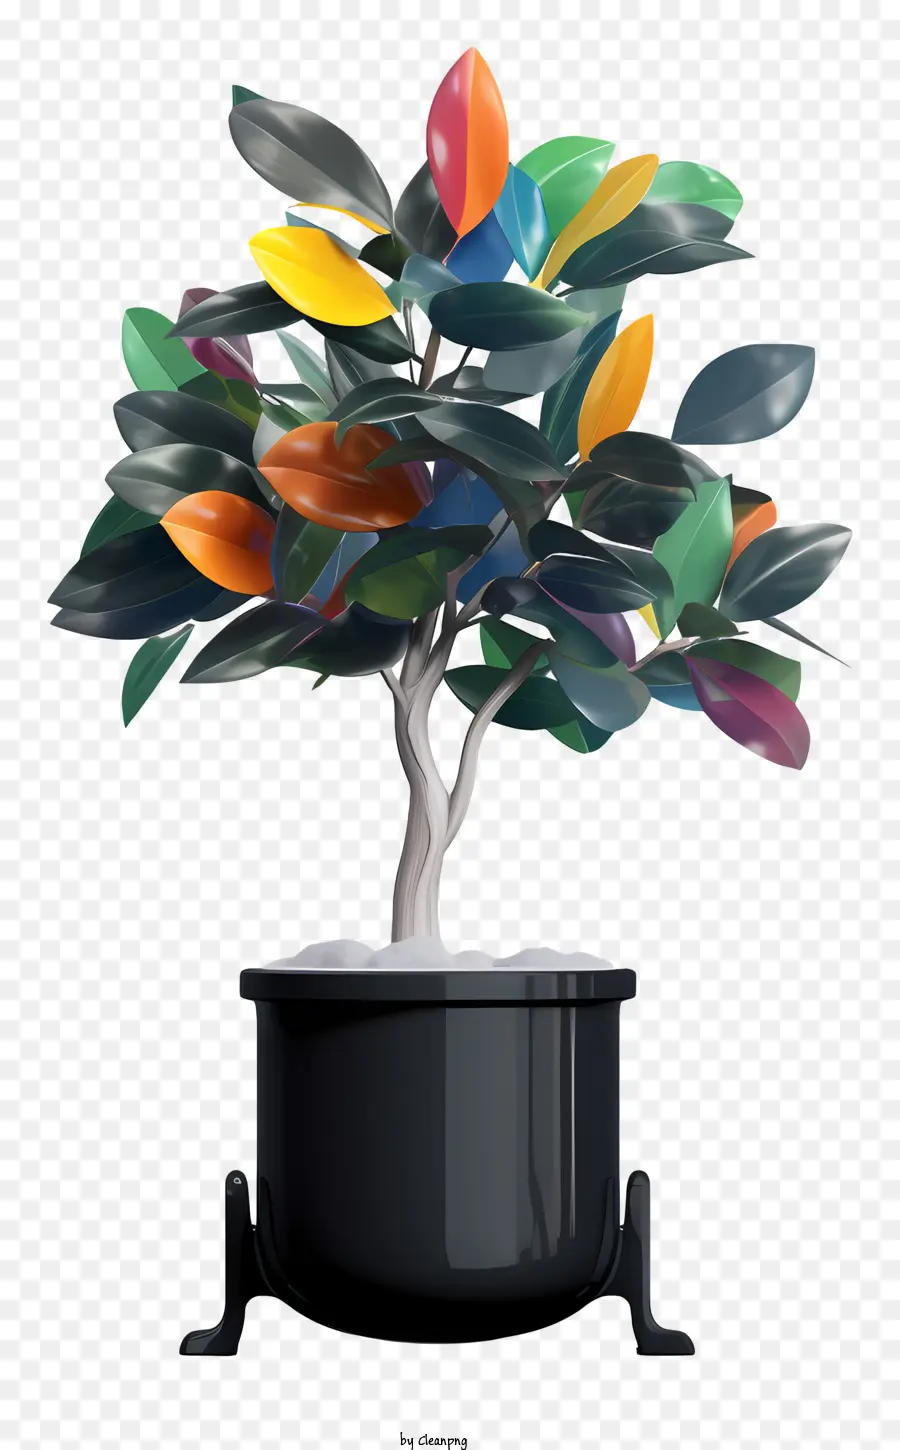 trái cam - Cây đầy màu sắc với nồi đen, lá đối xứng